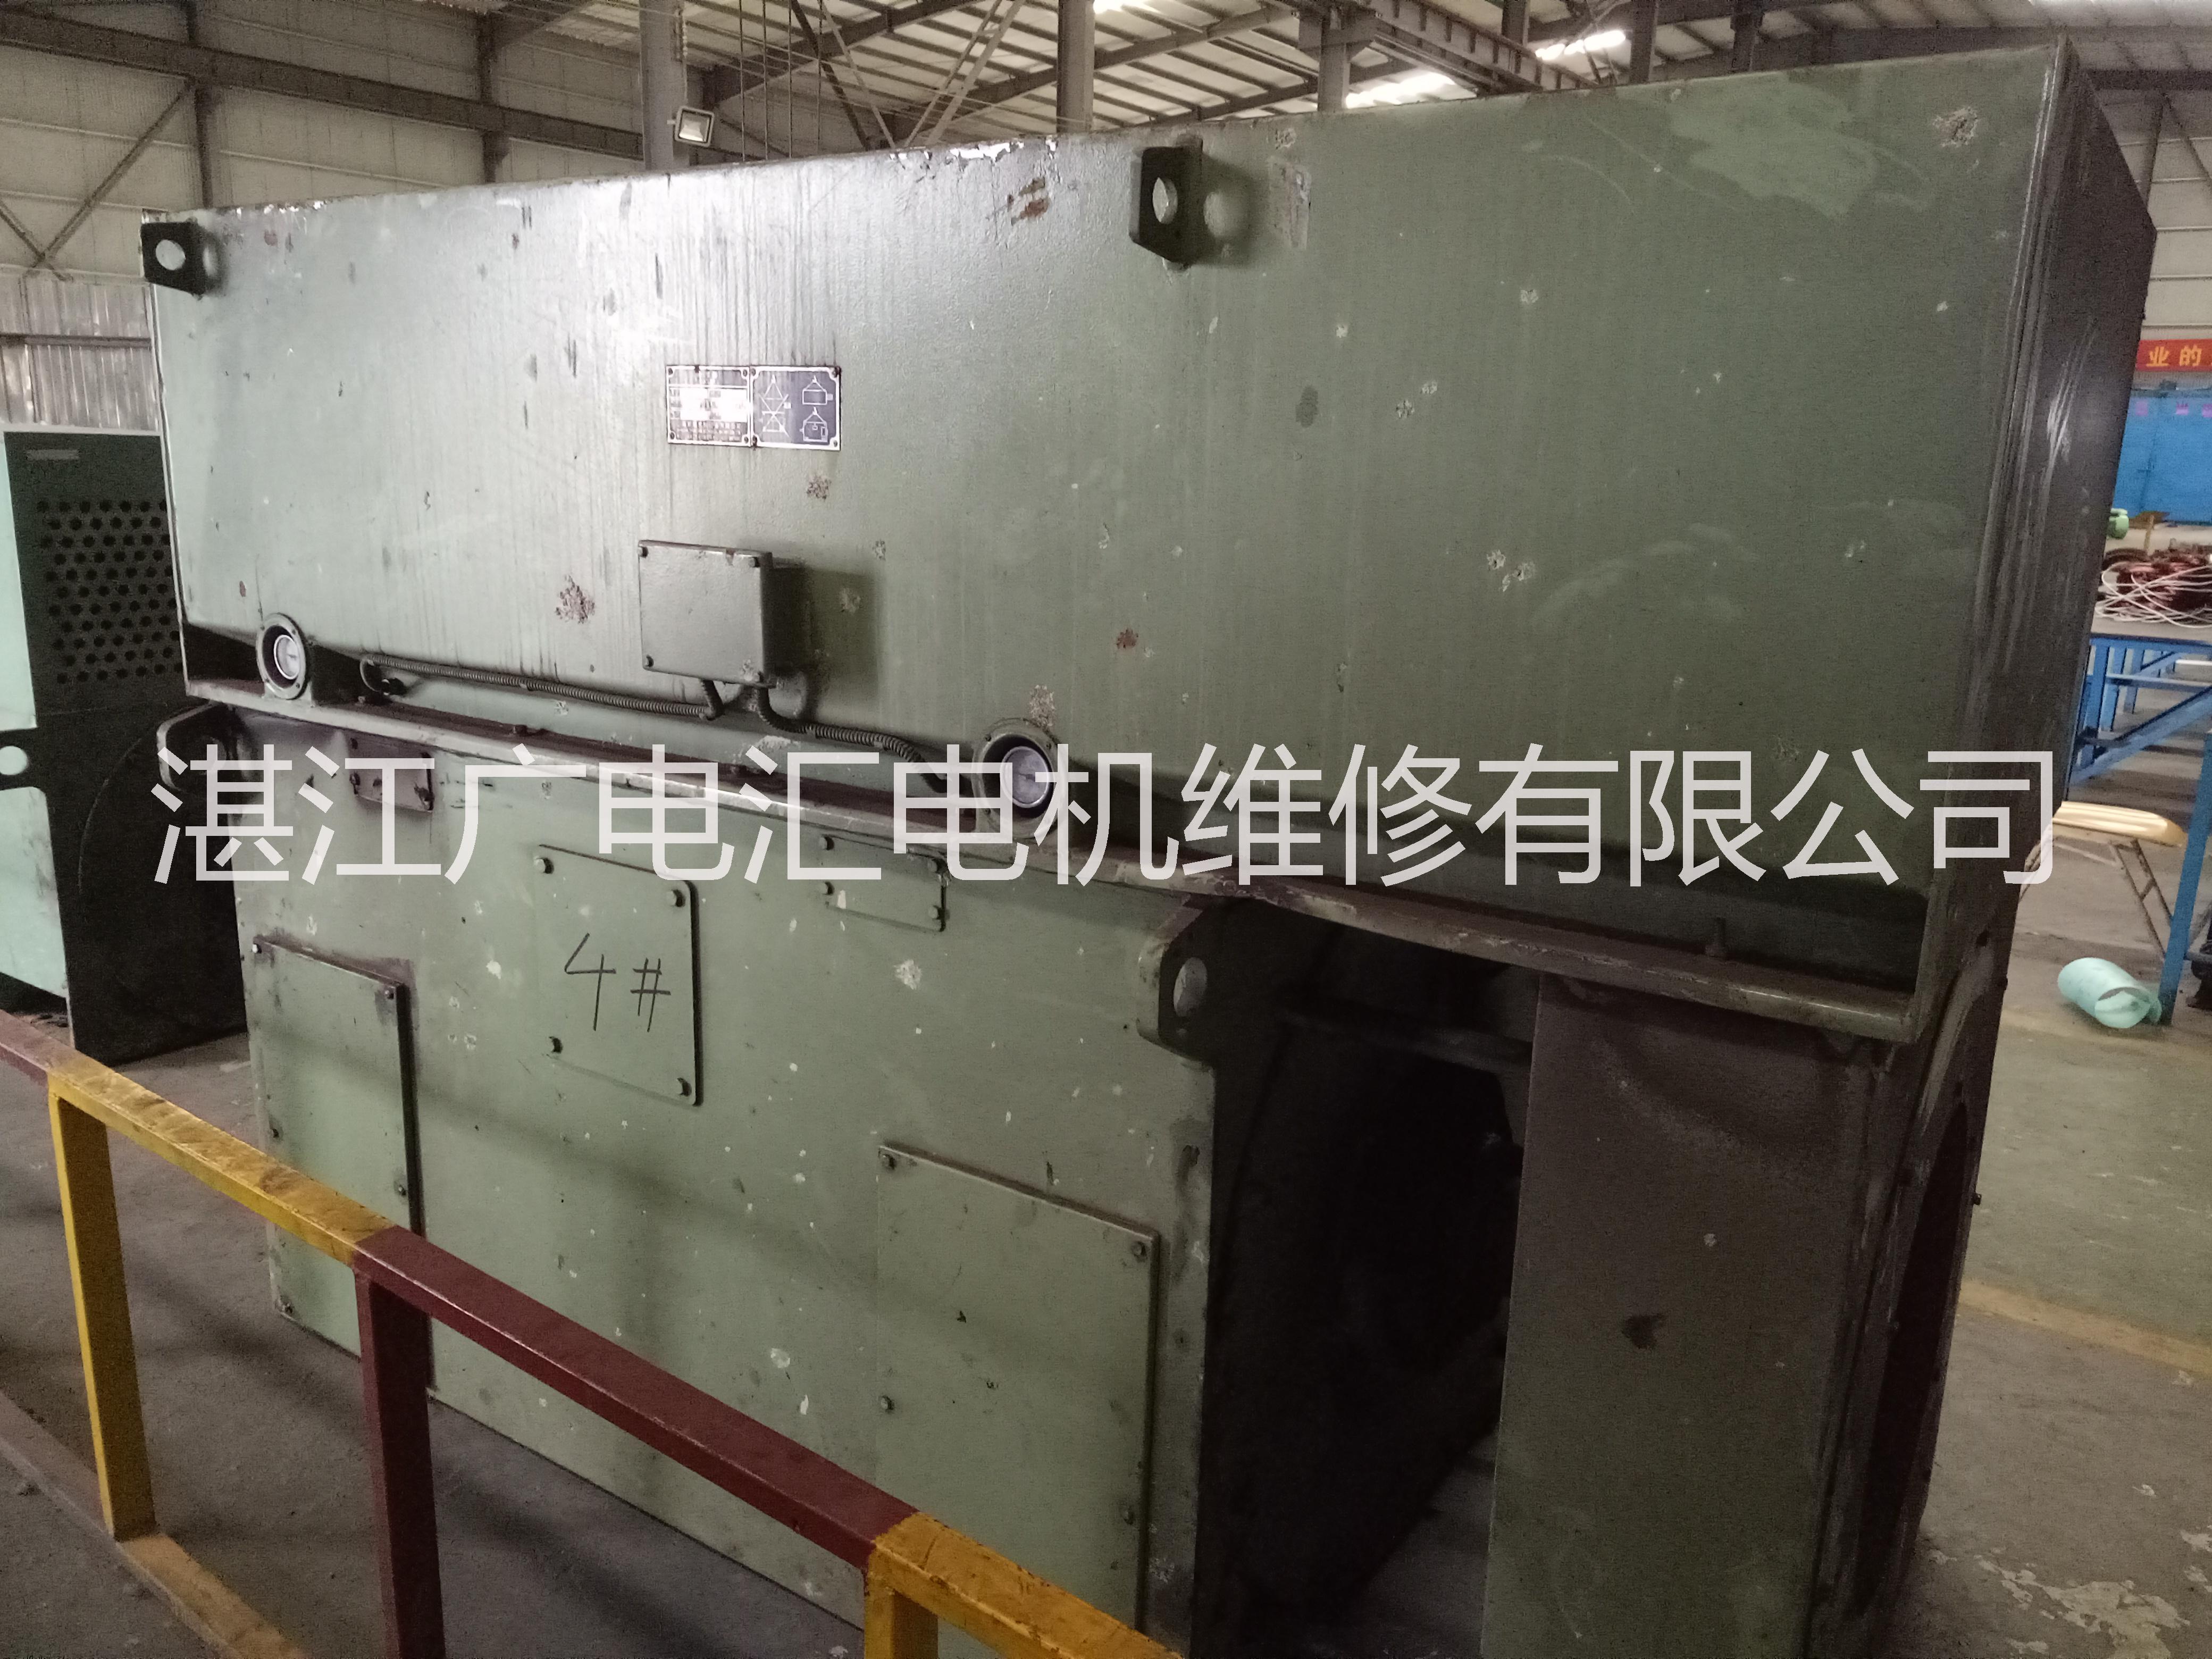 湛江市电机设备维修保养厂家